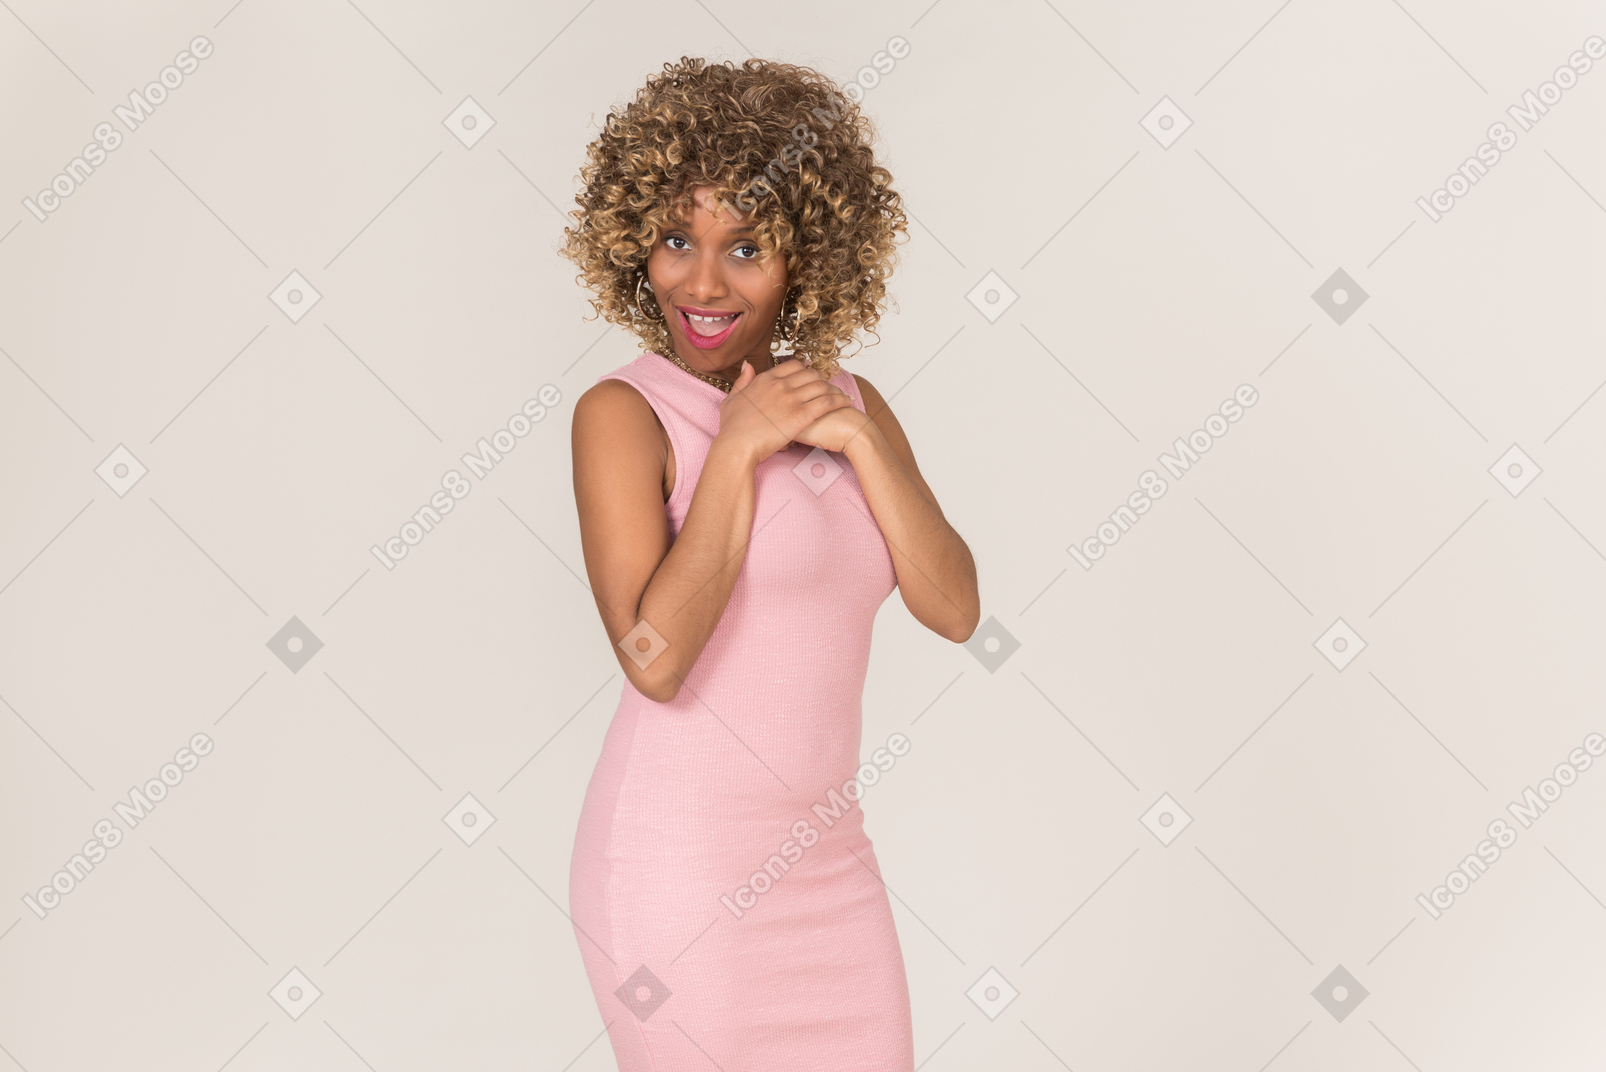 Eine junge schwarze frau mit flauschigen haaren in einem pastellrosa kleid, die allein vor einem schlichten grauen hintergrund spaß hat